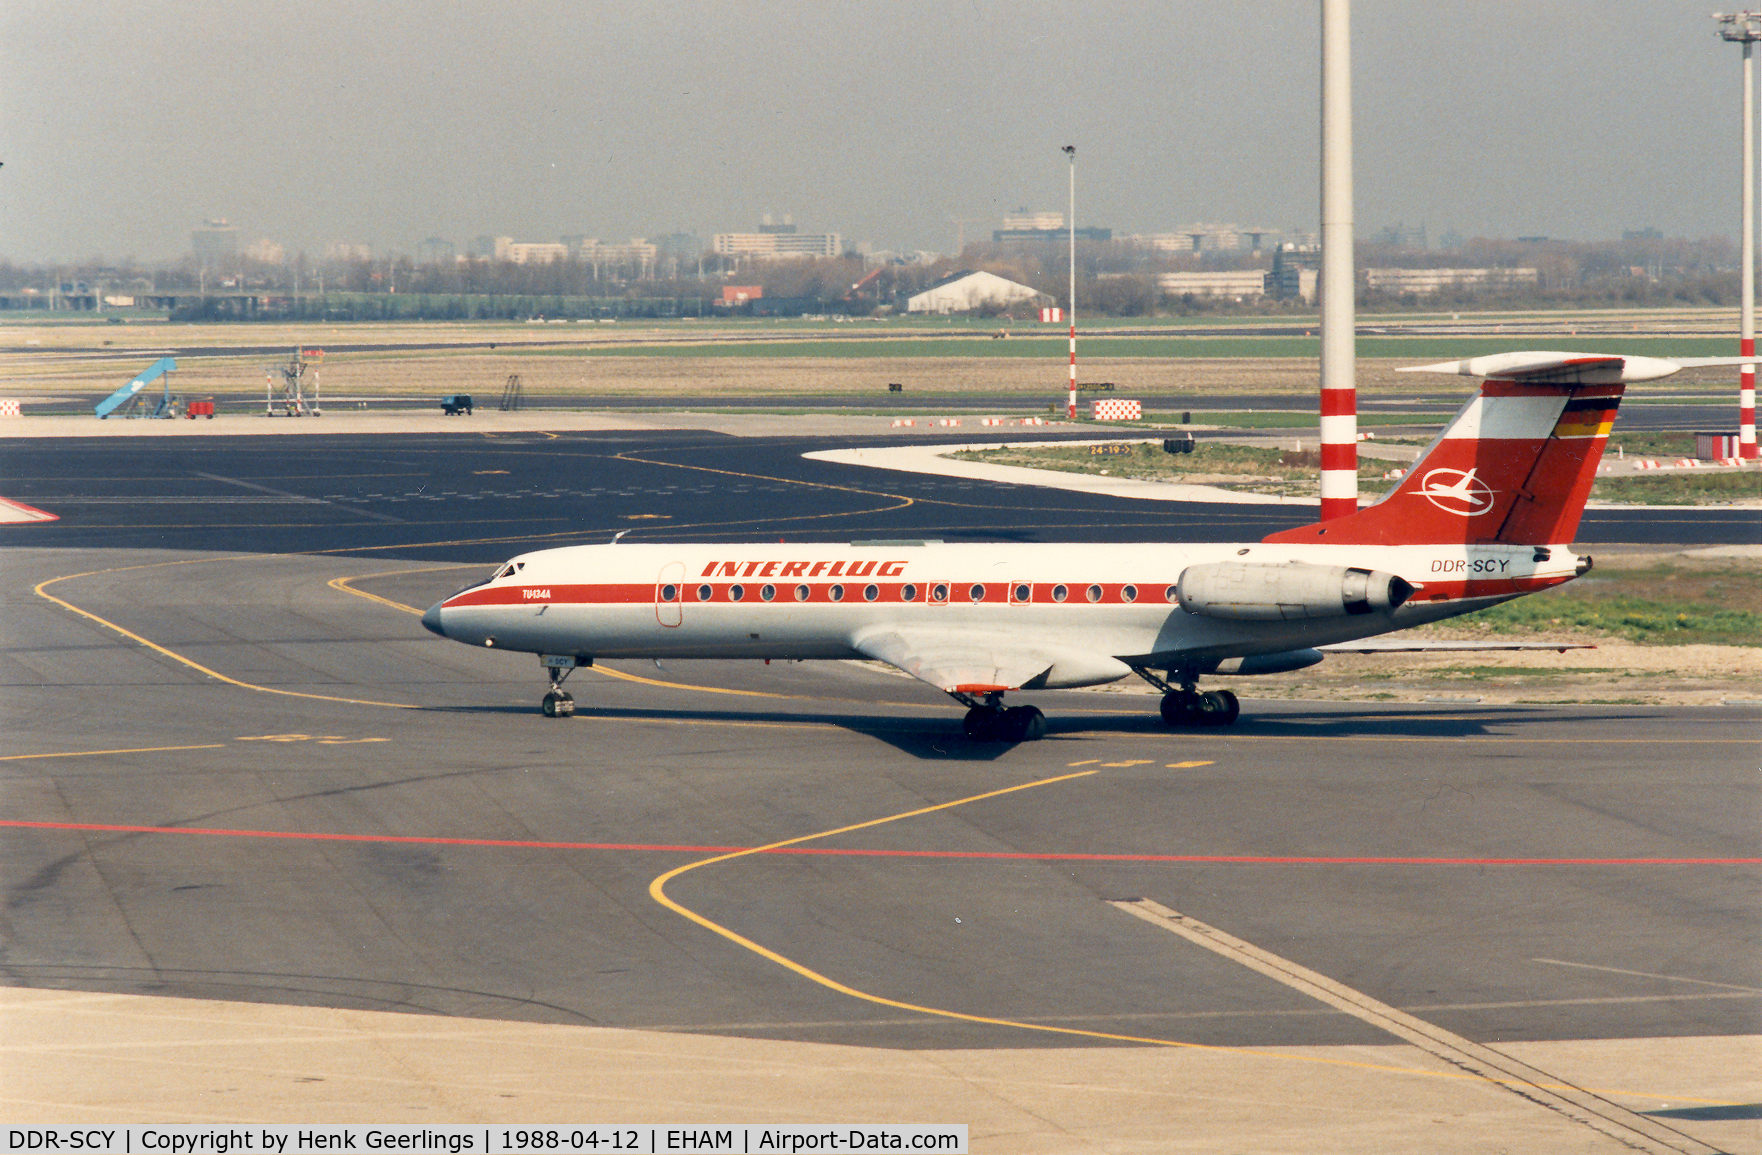 DDR-SCY, Tupolev Tu-134A C/N 60495, Interflug